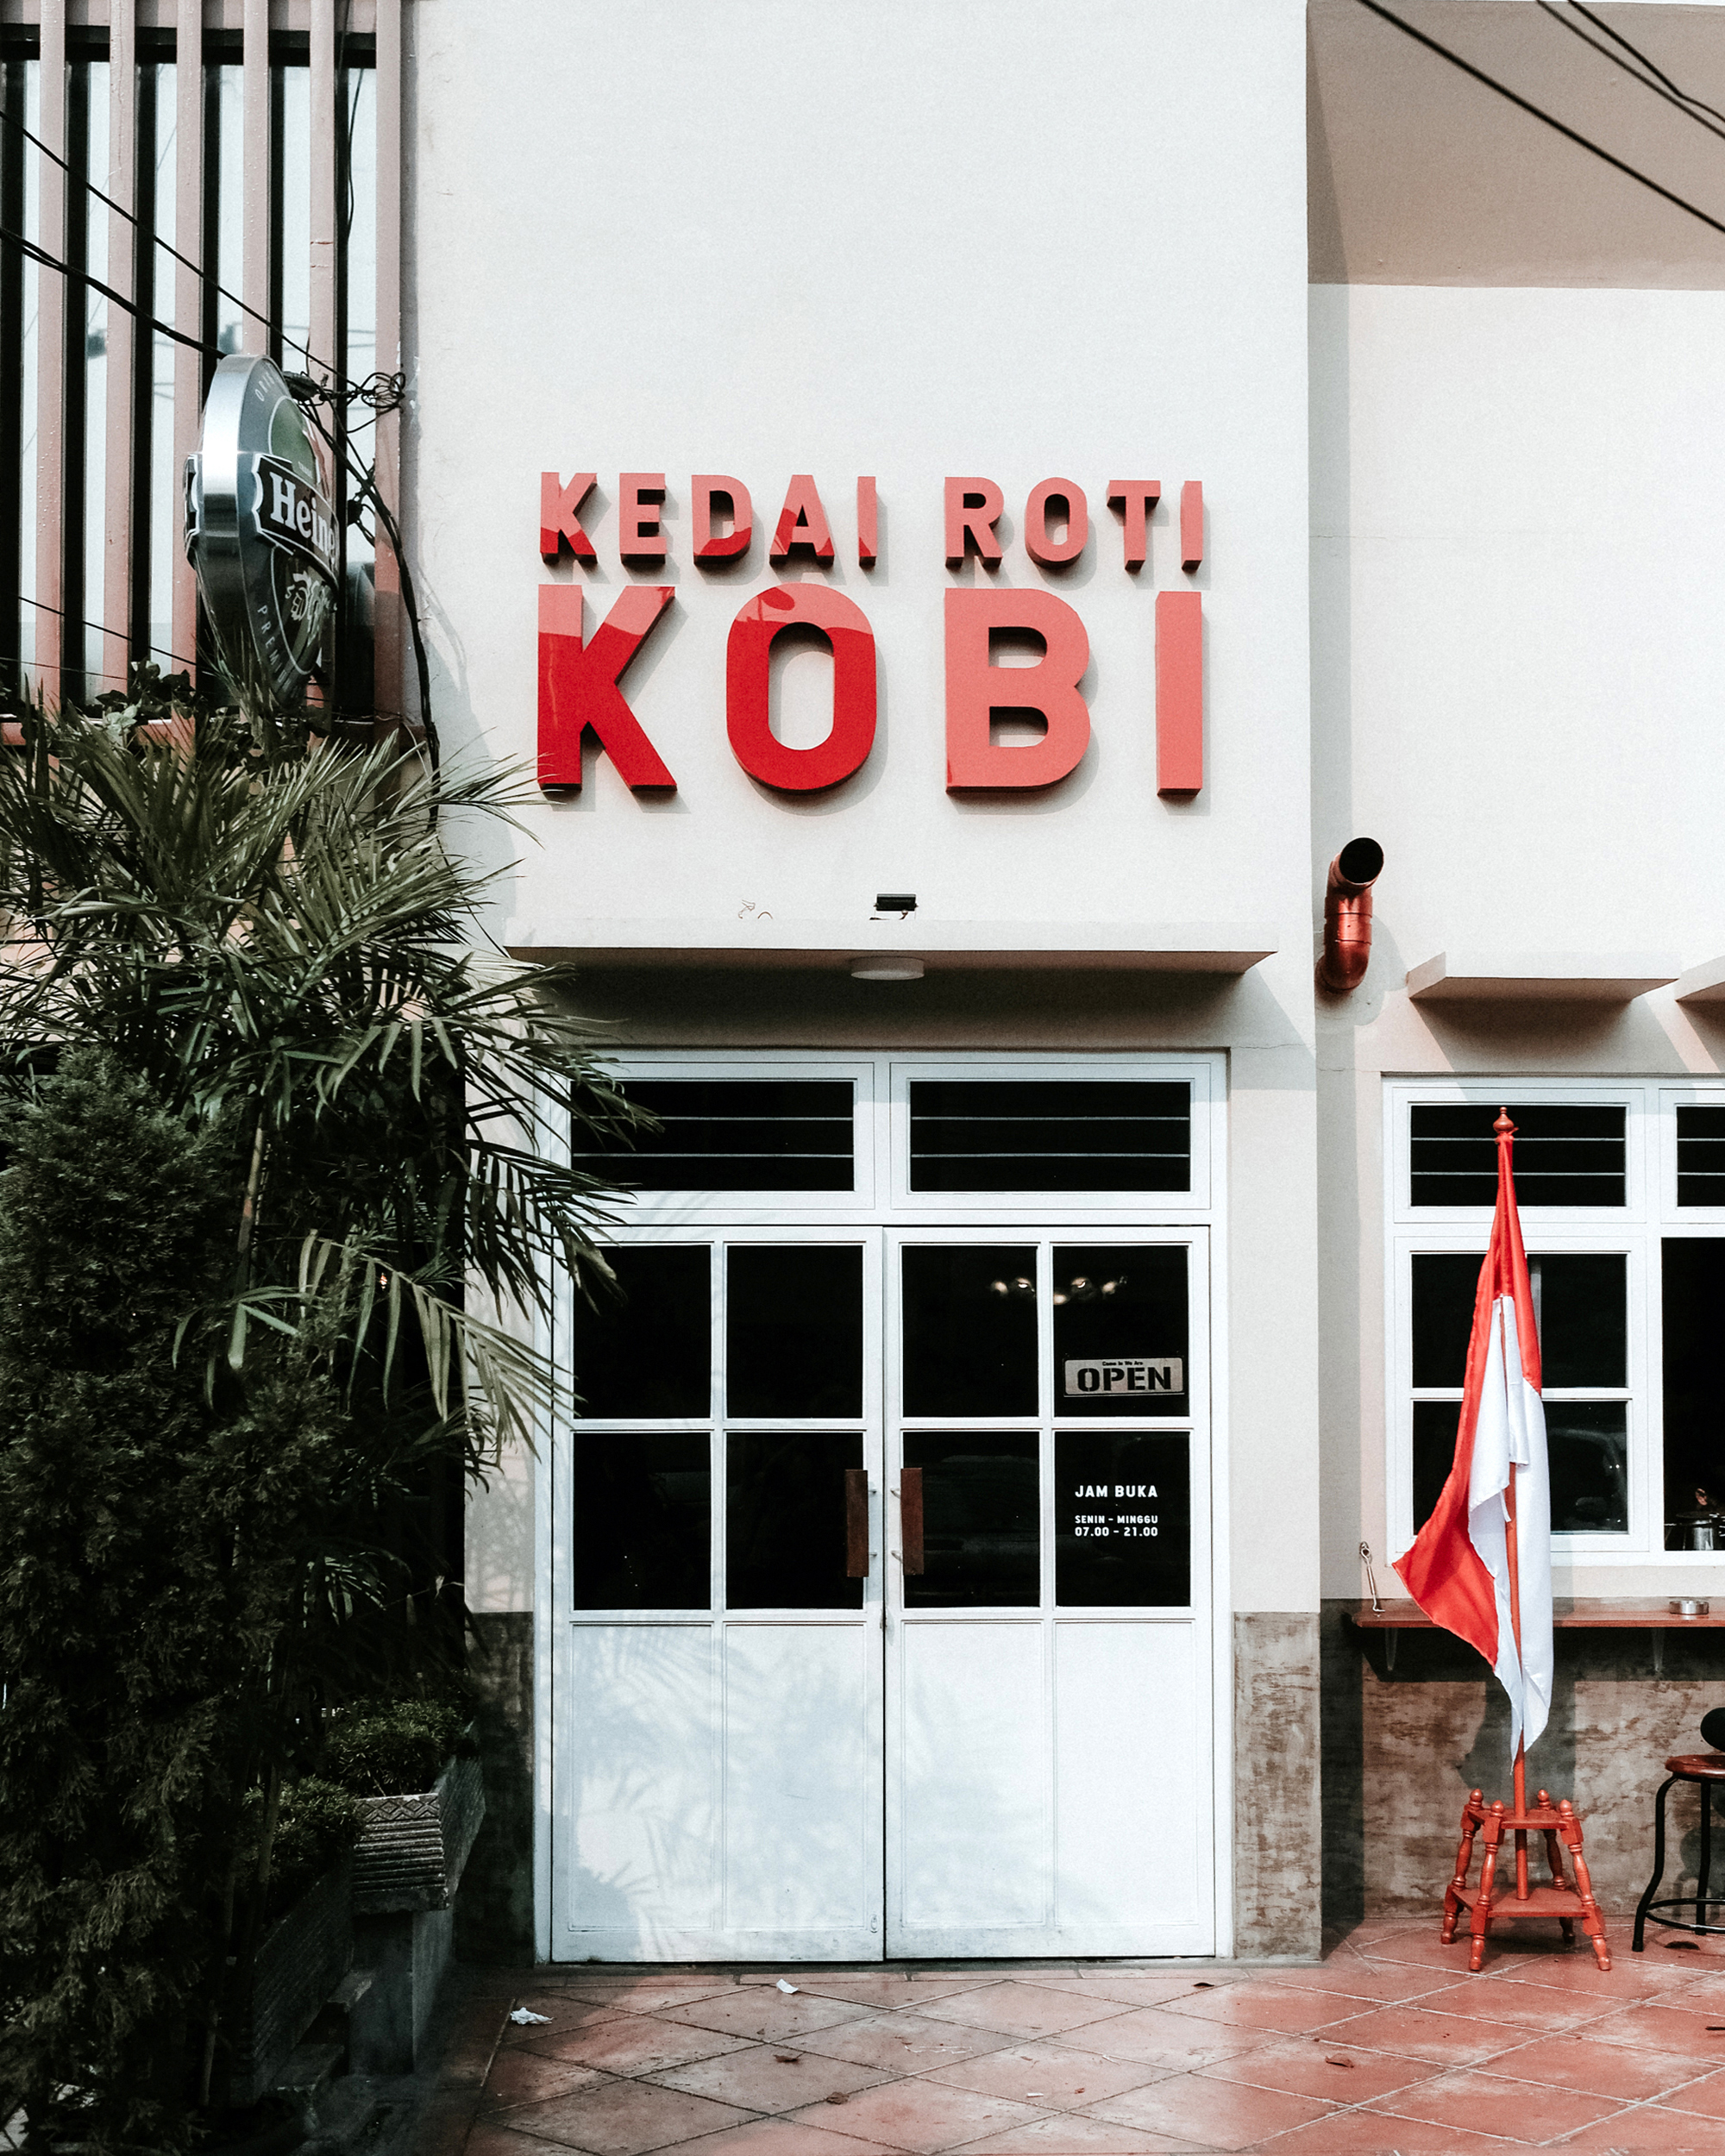 Go-to place for Roti Nogat : Kedai Roti Kobi, Jakarta